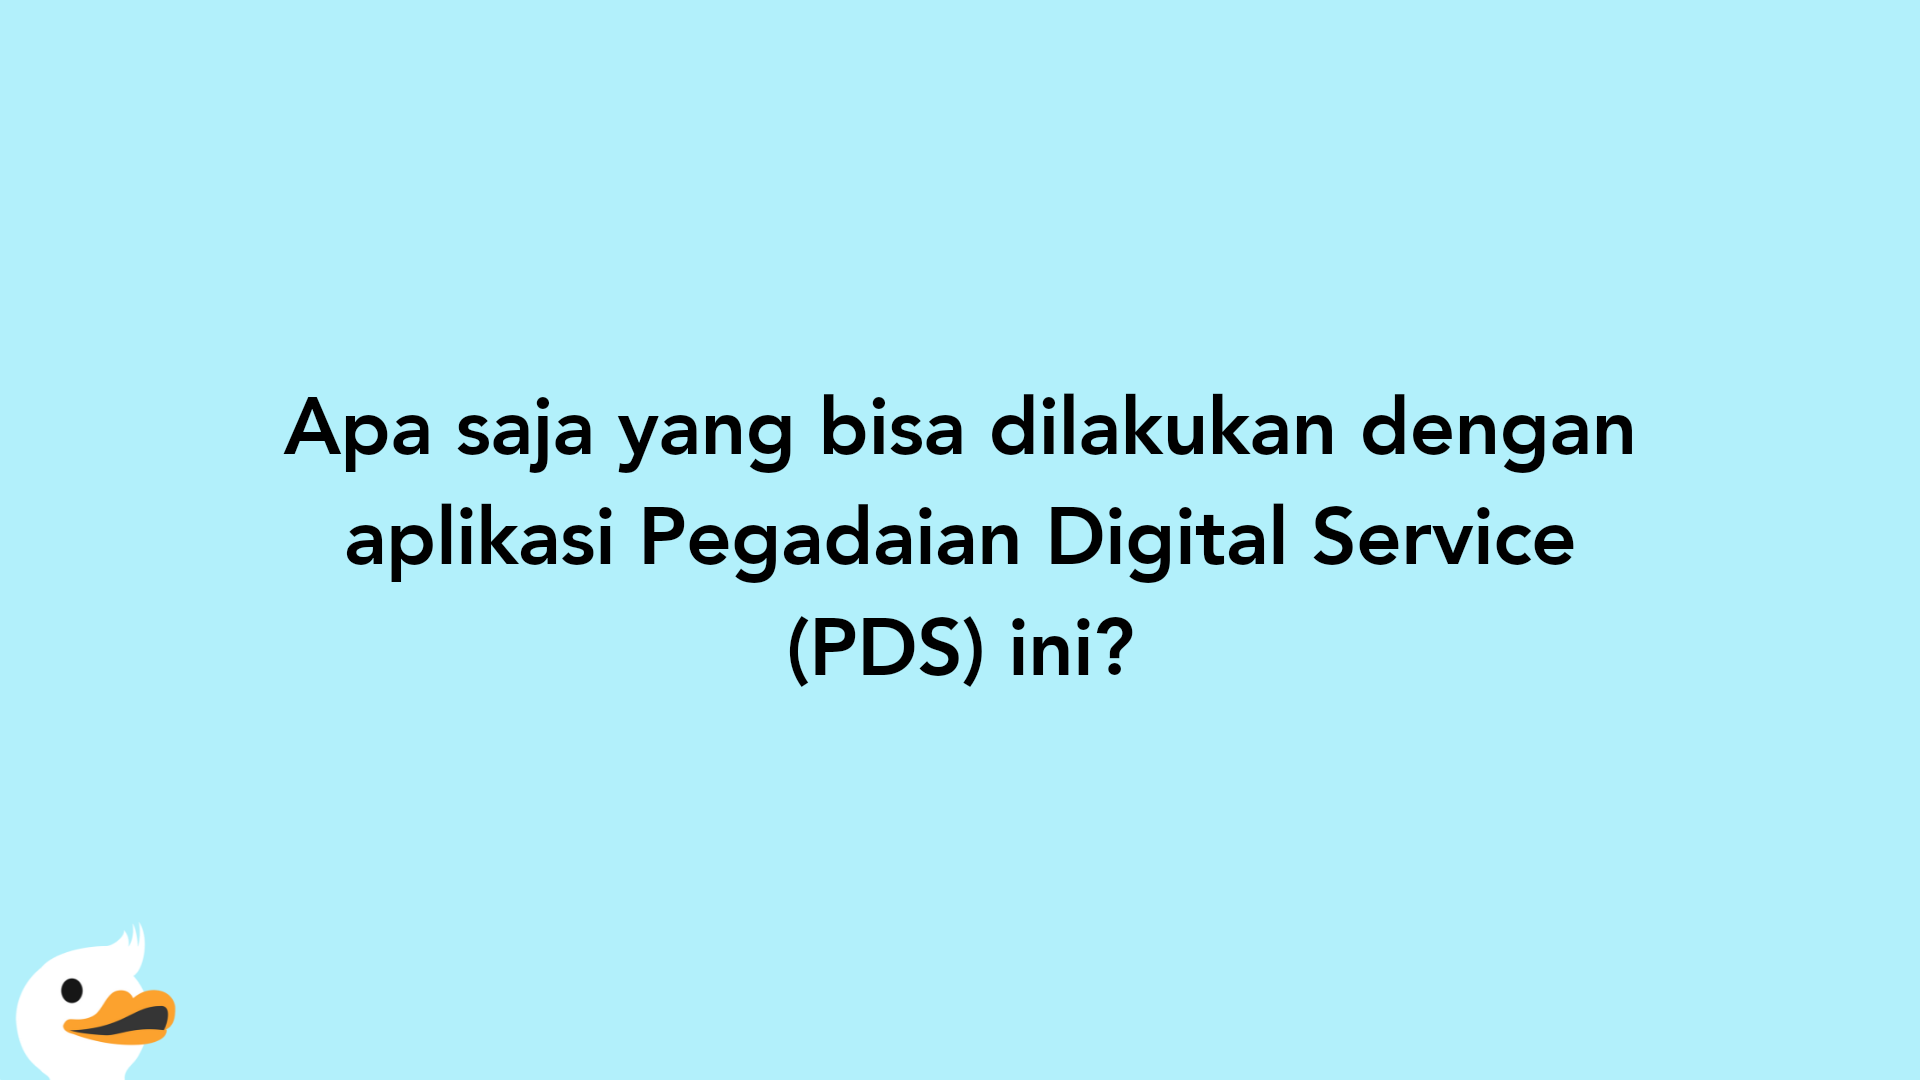 Apa saja yang bisa dilakukan dengan aplikasi Pegadaian Digital Service (PDS) ini?